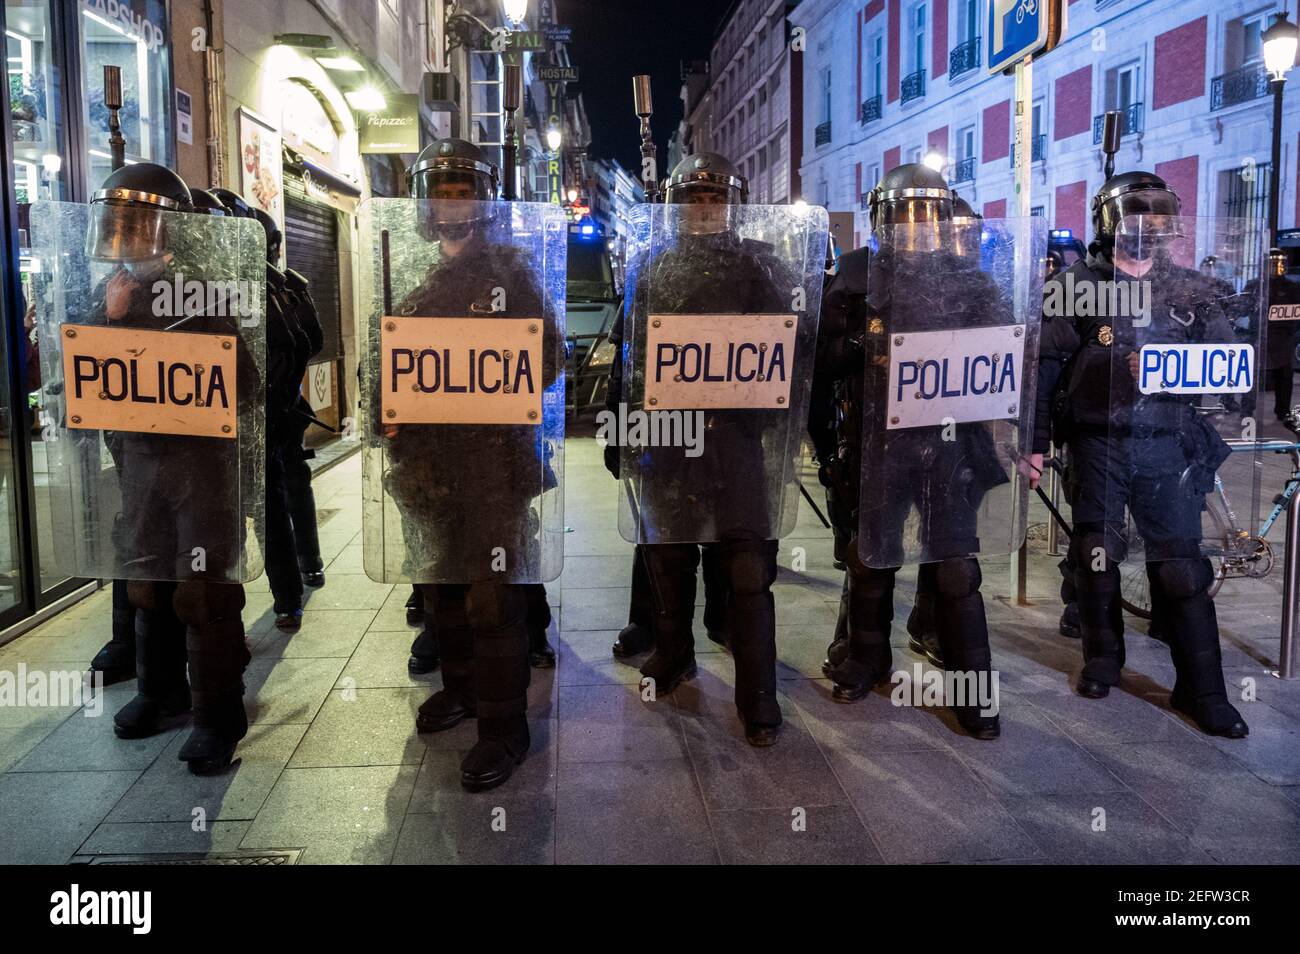 Madrid, Spanien. Februar 2021, 17th. Polizeibeamte halten während einer Demonstration gegen die Inhaftierung des spanischen Rappers Pablo Hasel Position für einige Liedtexte und Tweets, die die spanische Monarchie kritisieren. Quelle: Marcos del Mazo/Alamy Live News Stockfoto